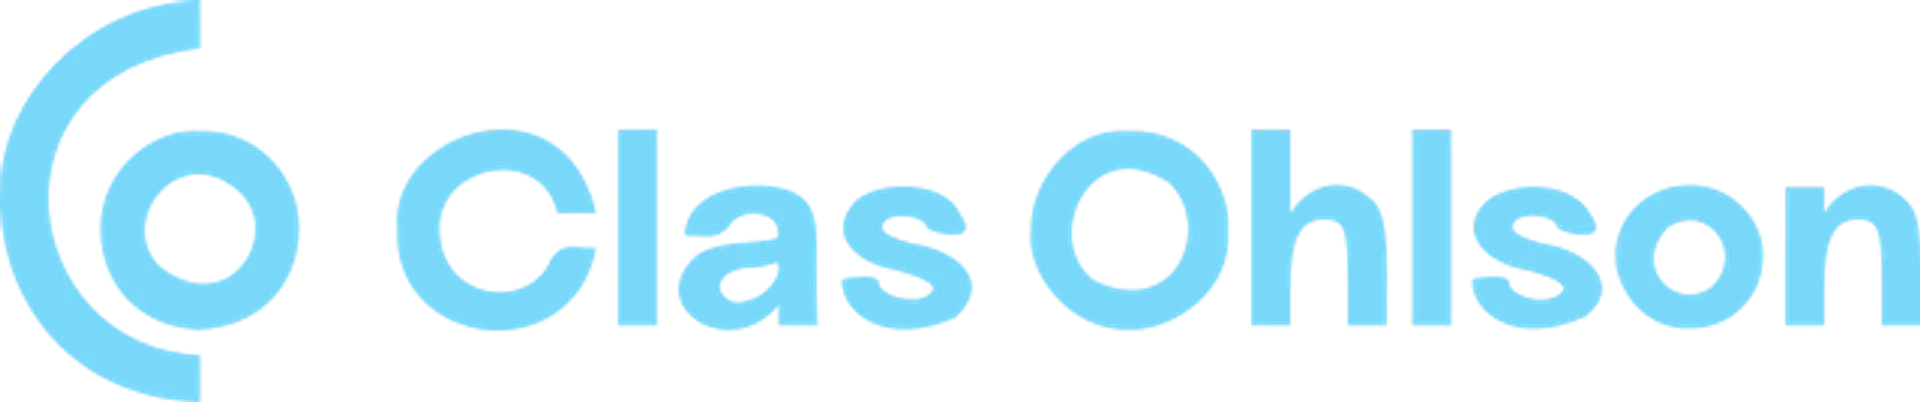 CLAS OHLSON logo